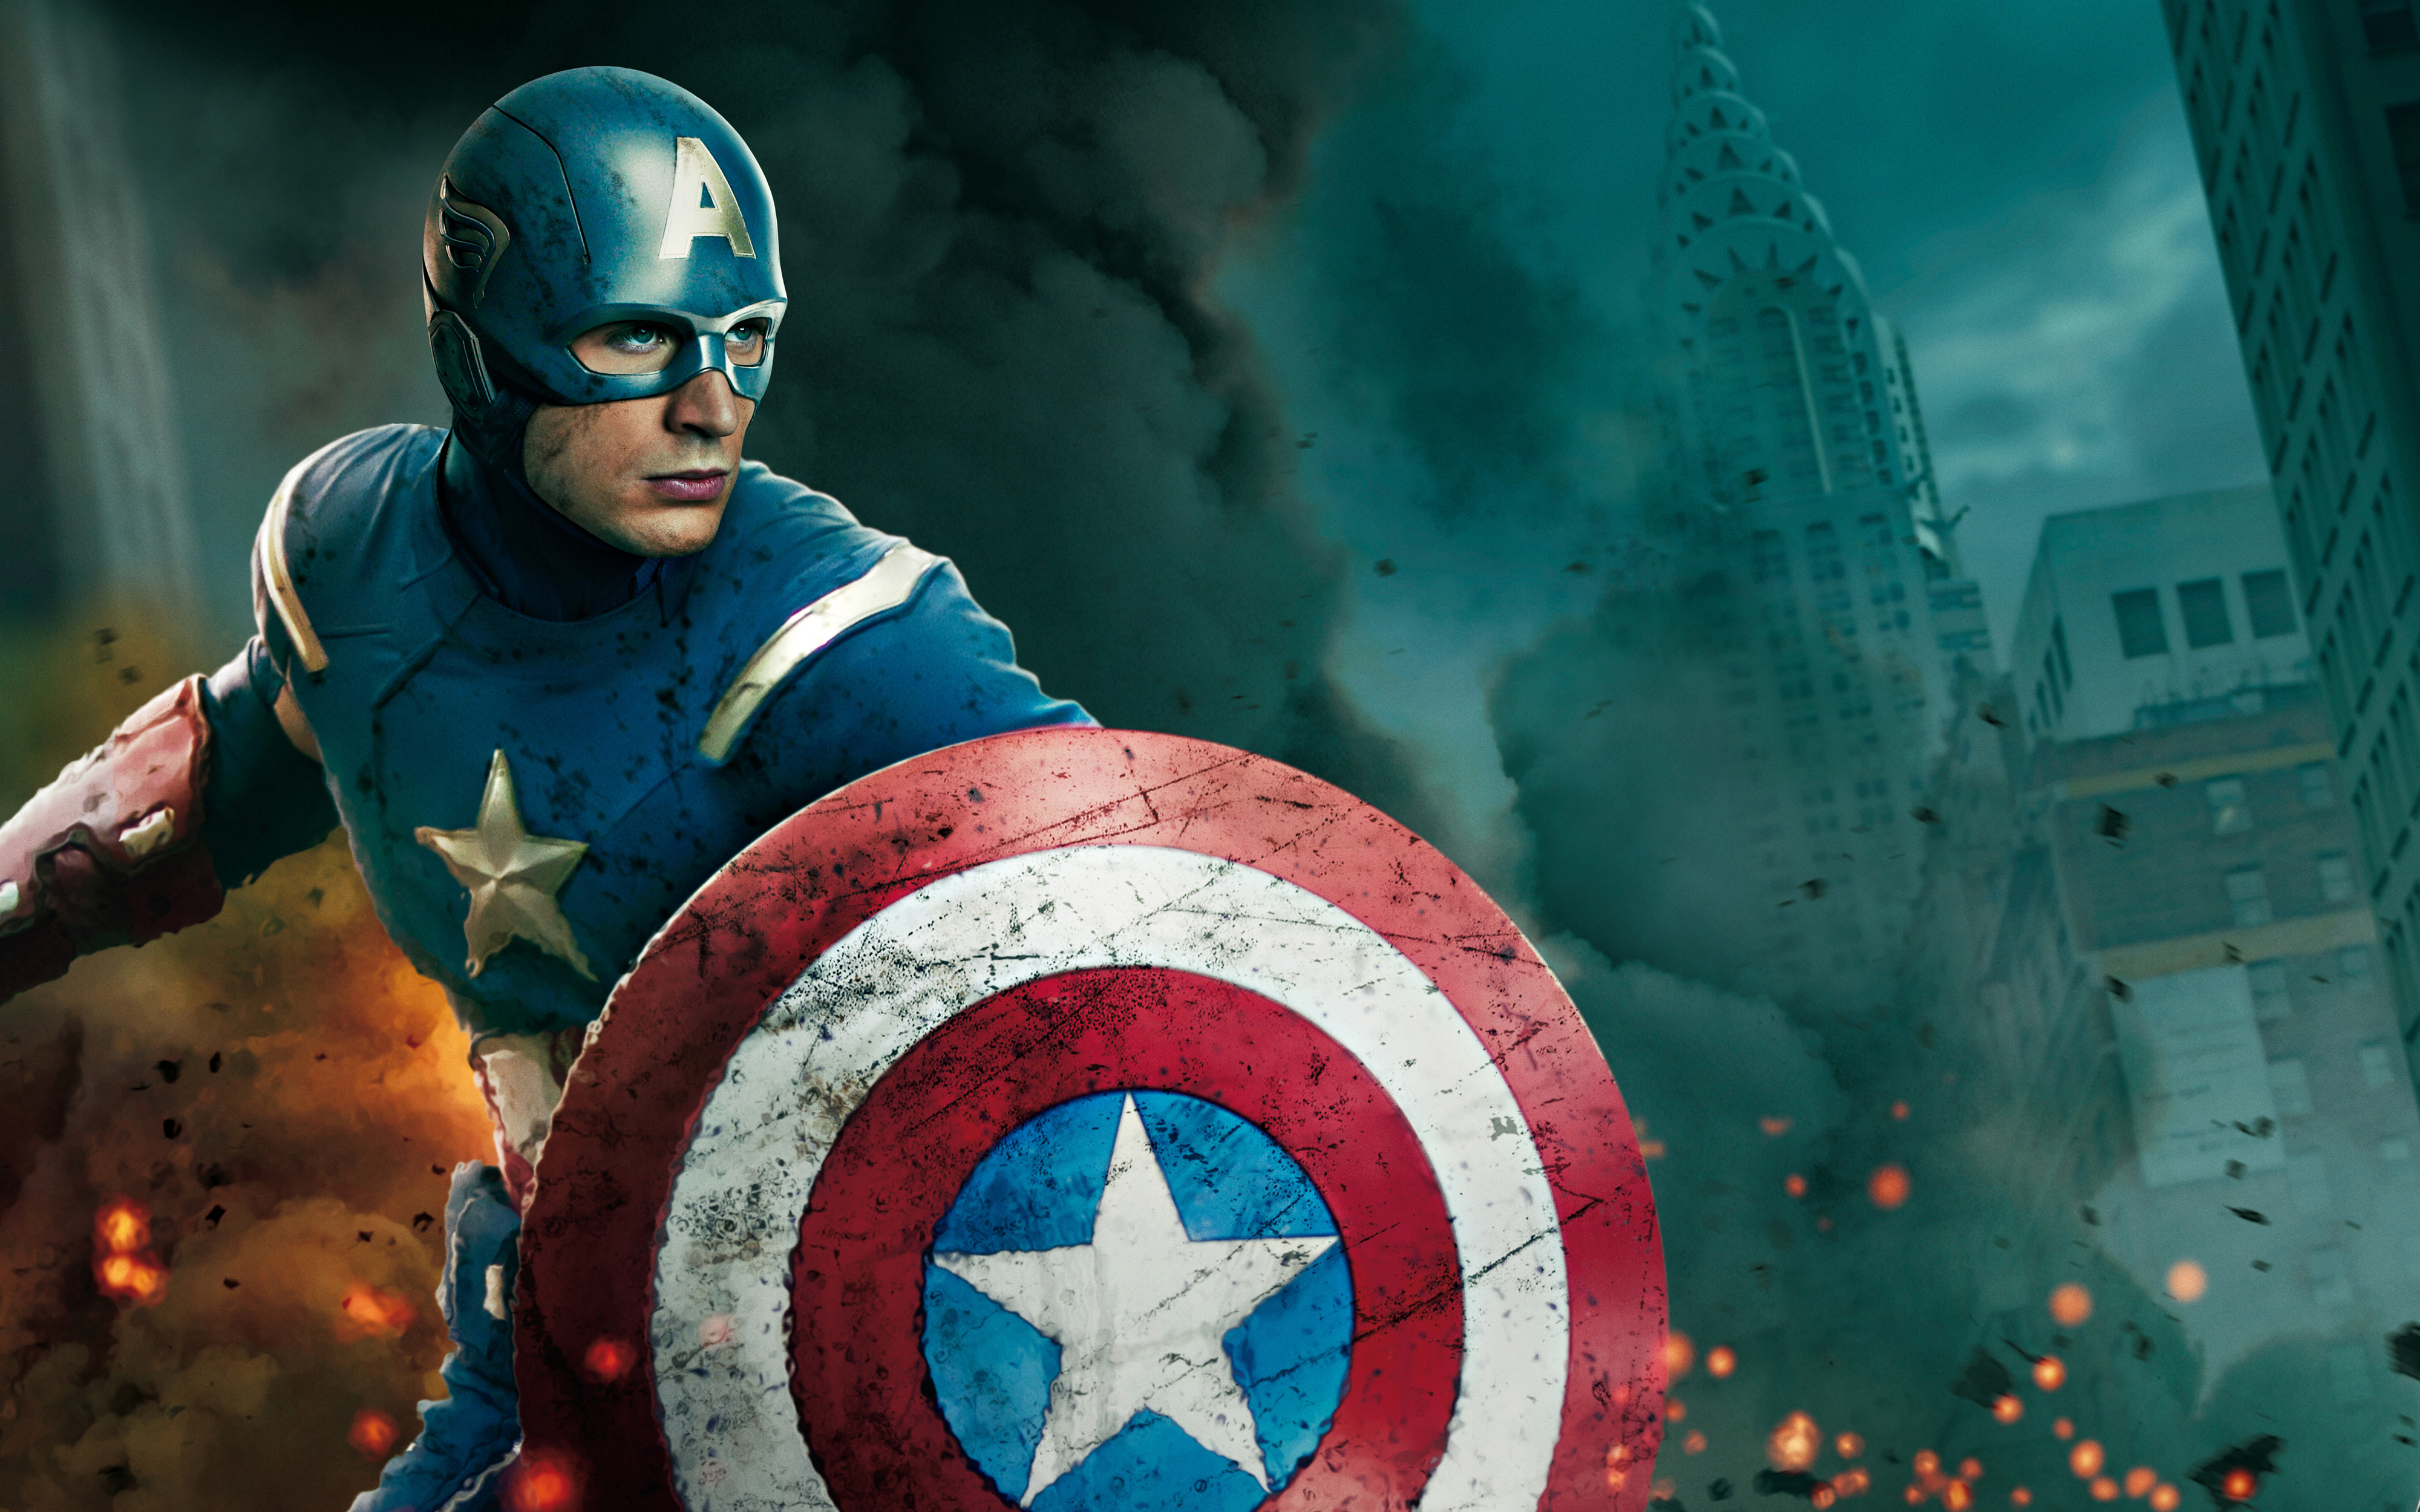 キャプテンアメリカ壁紙,キャプテン・アメリカ,スーパーヒーロー,架空の人物,ヒーロー,アクション映画